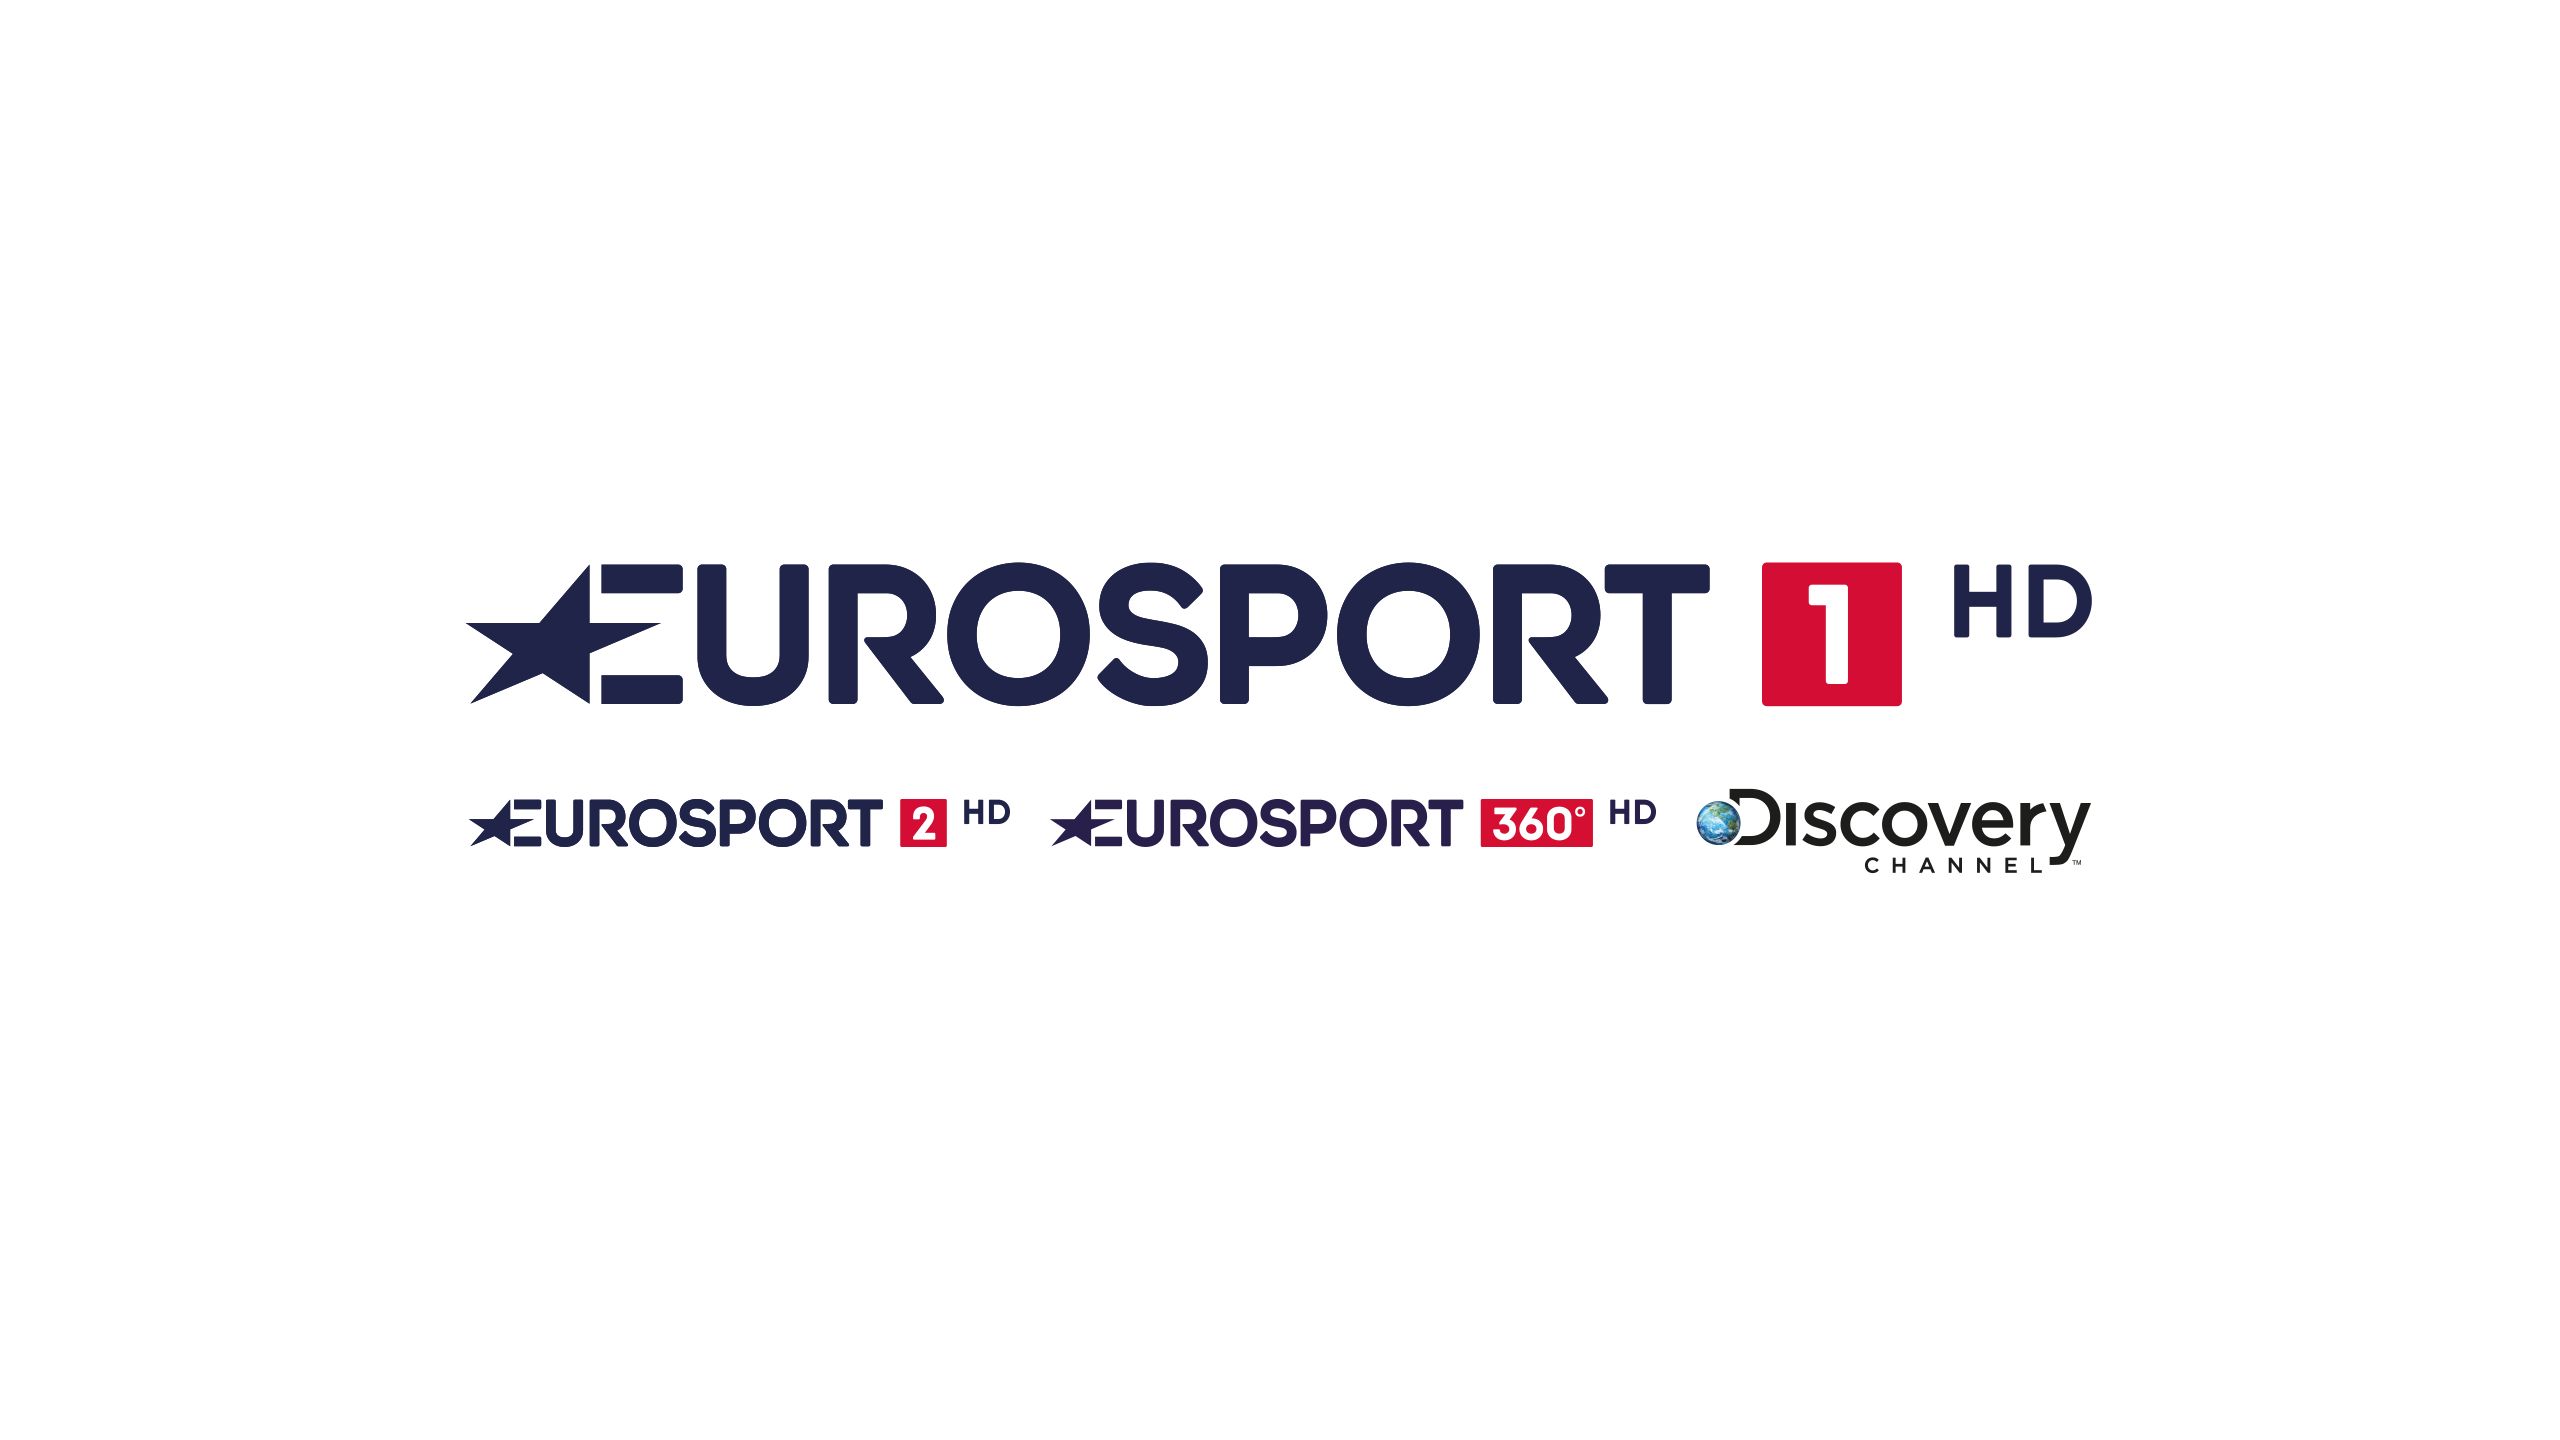 tv sender eurosport 1 kostenloser livestream